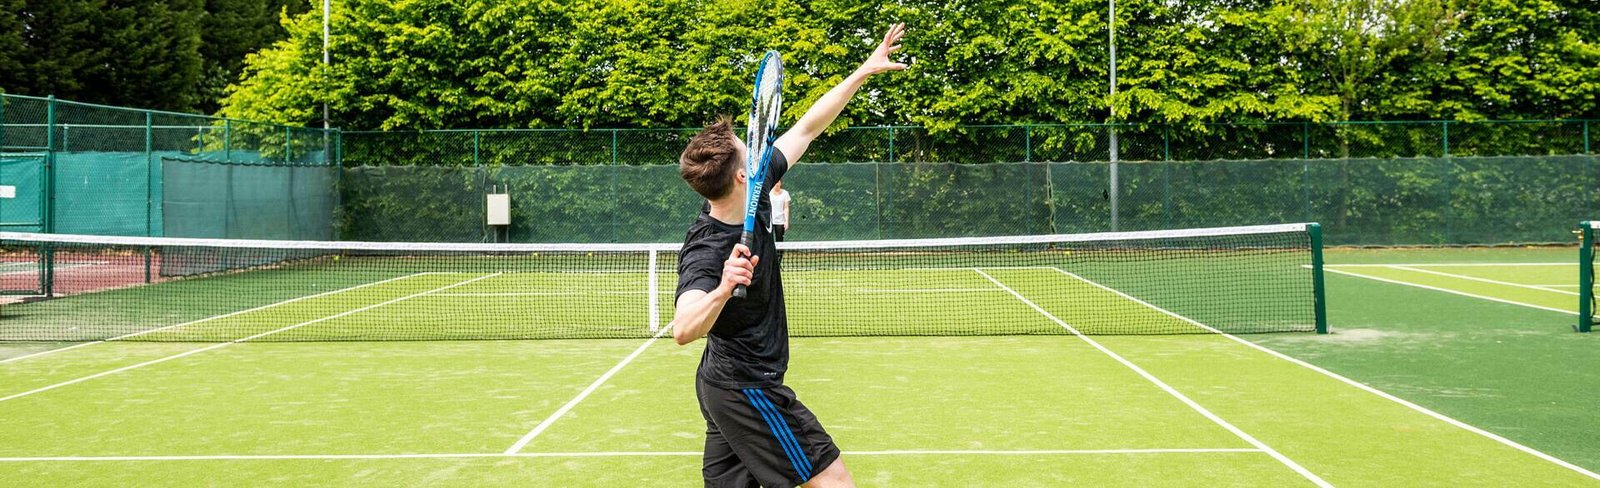 How Tall is a Tennis Net